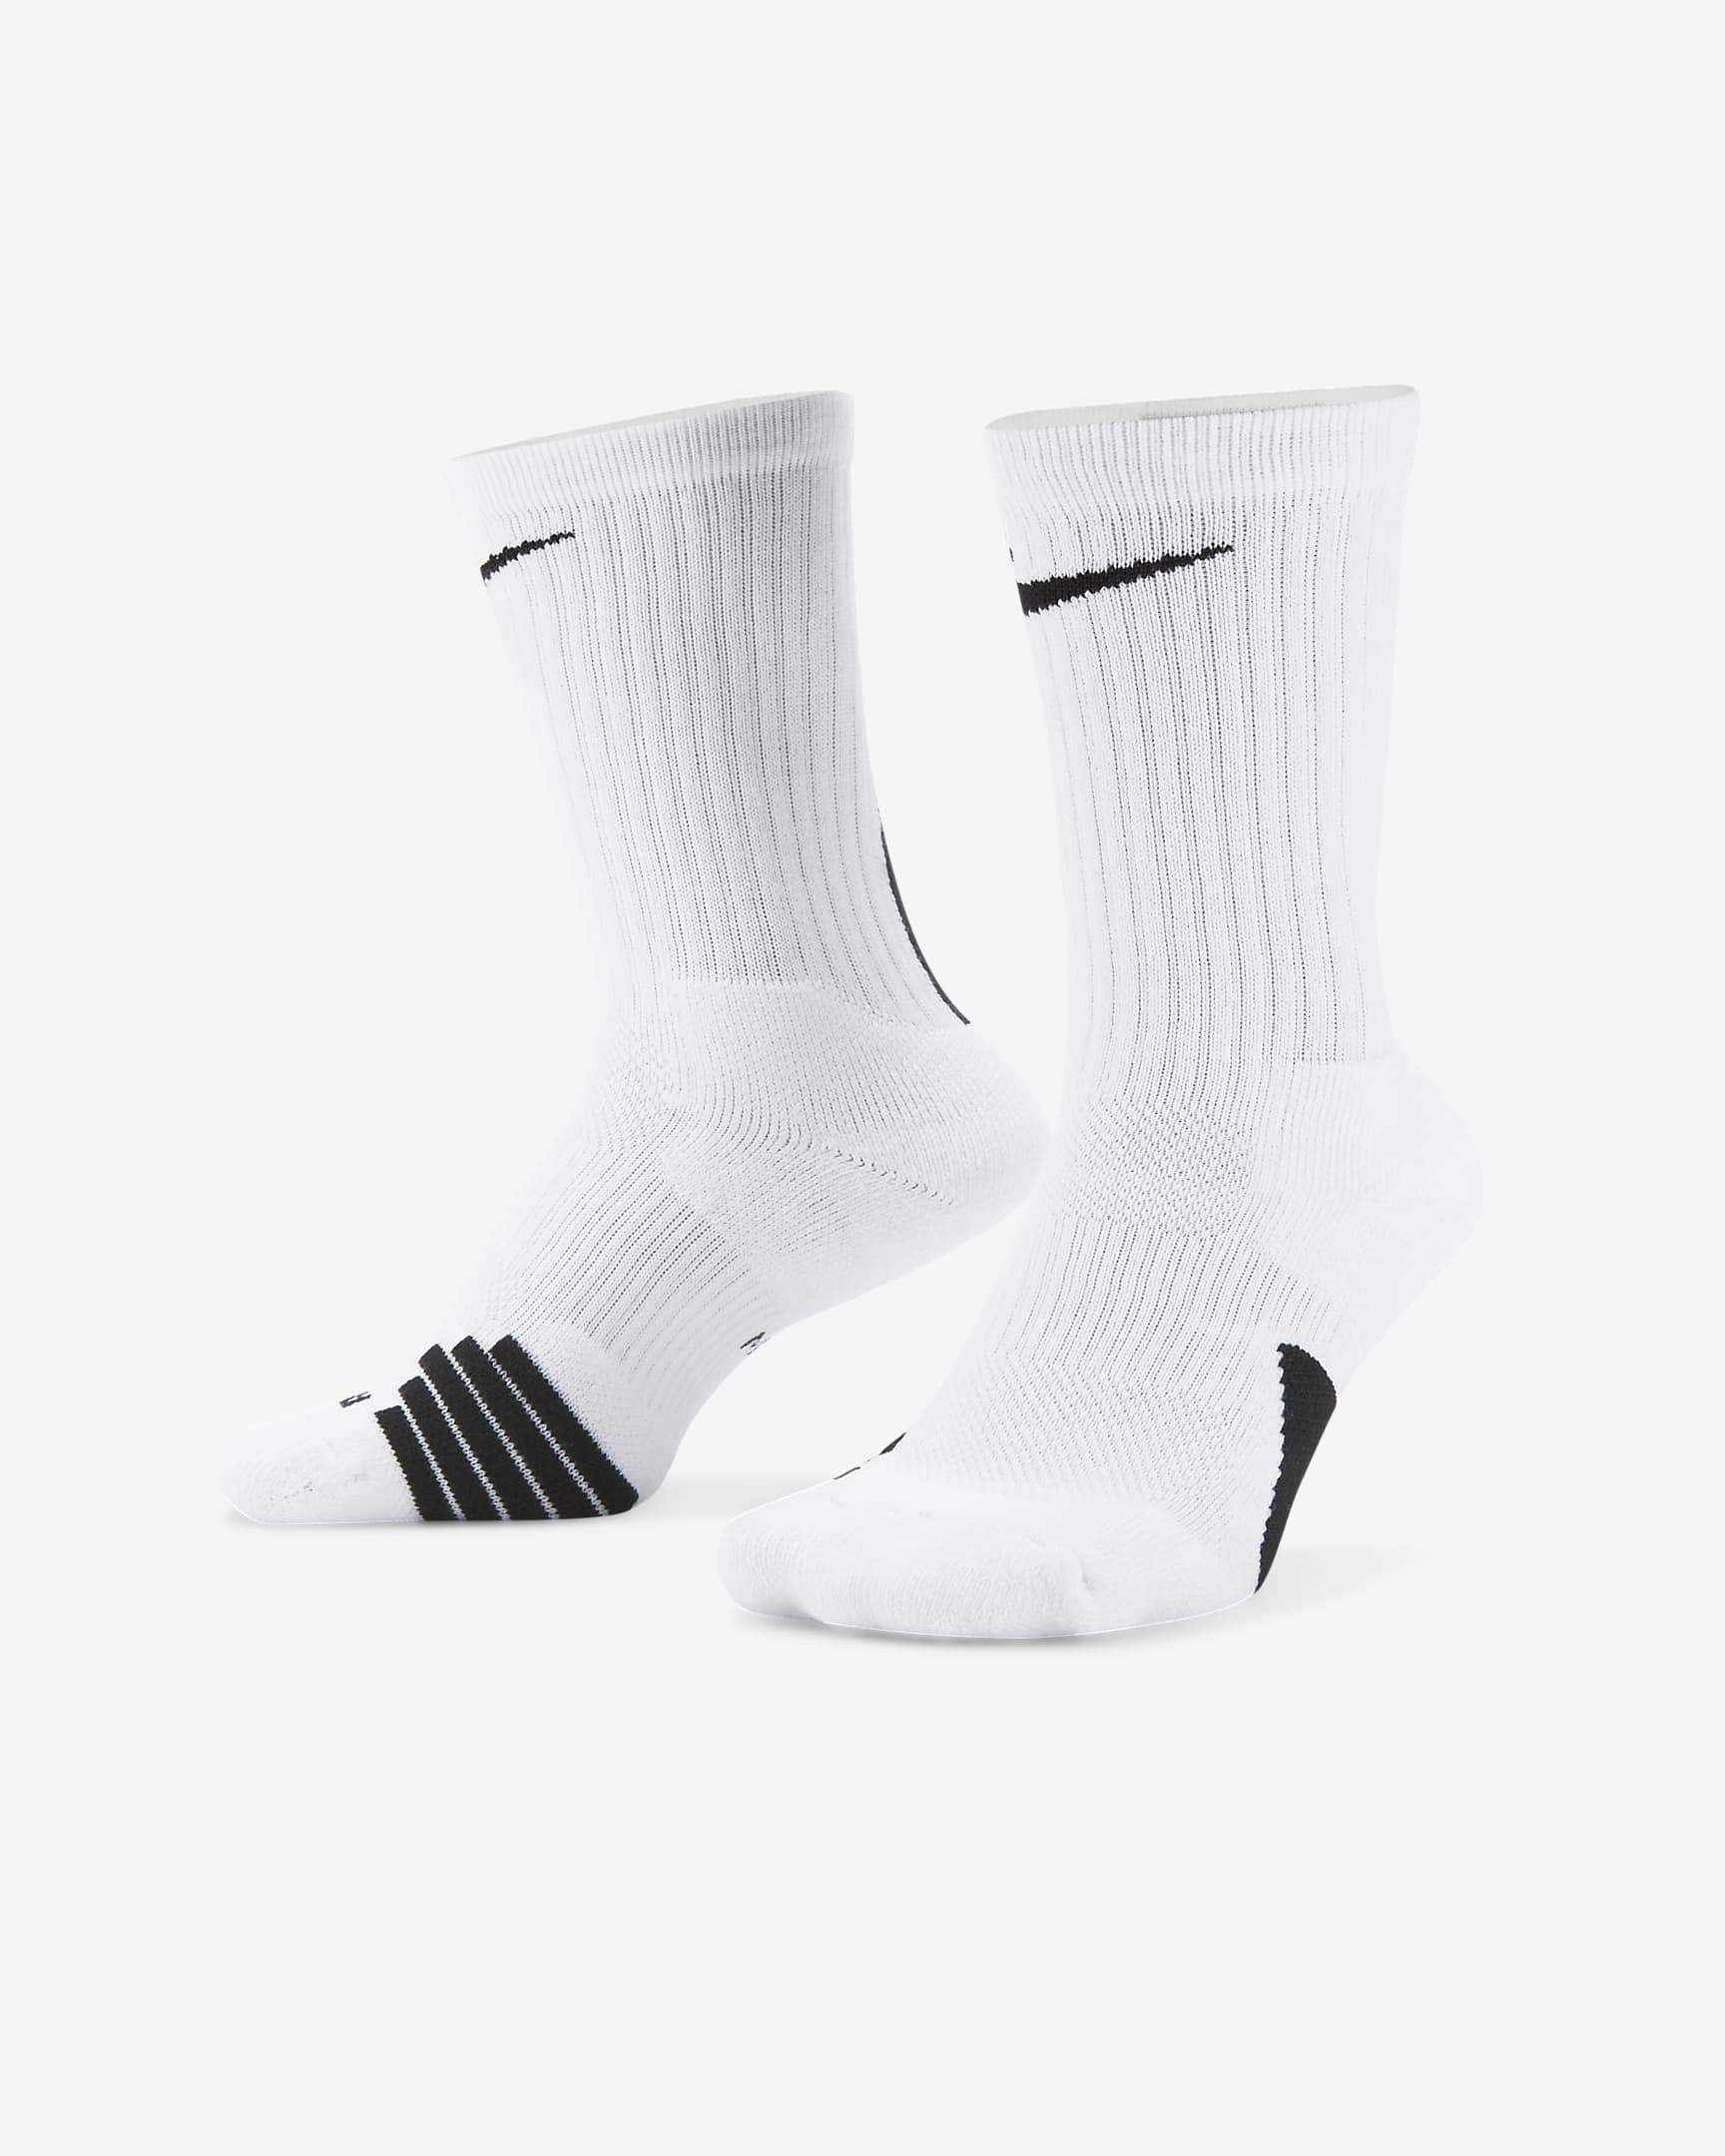 Nike Elite Crew Basketball Socks. Nike FI